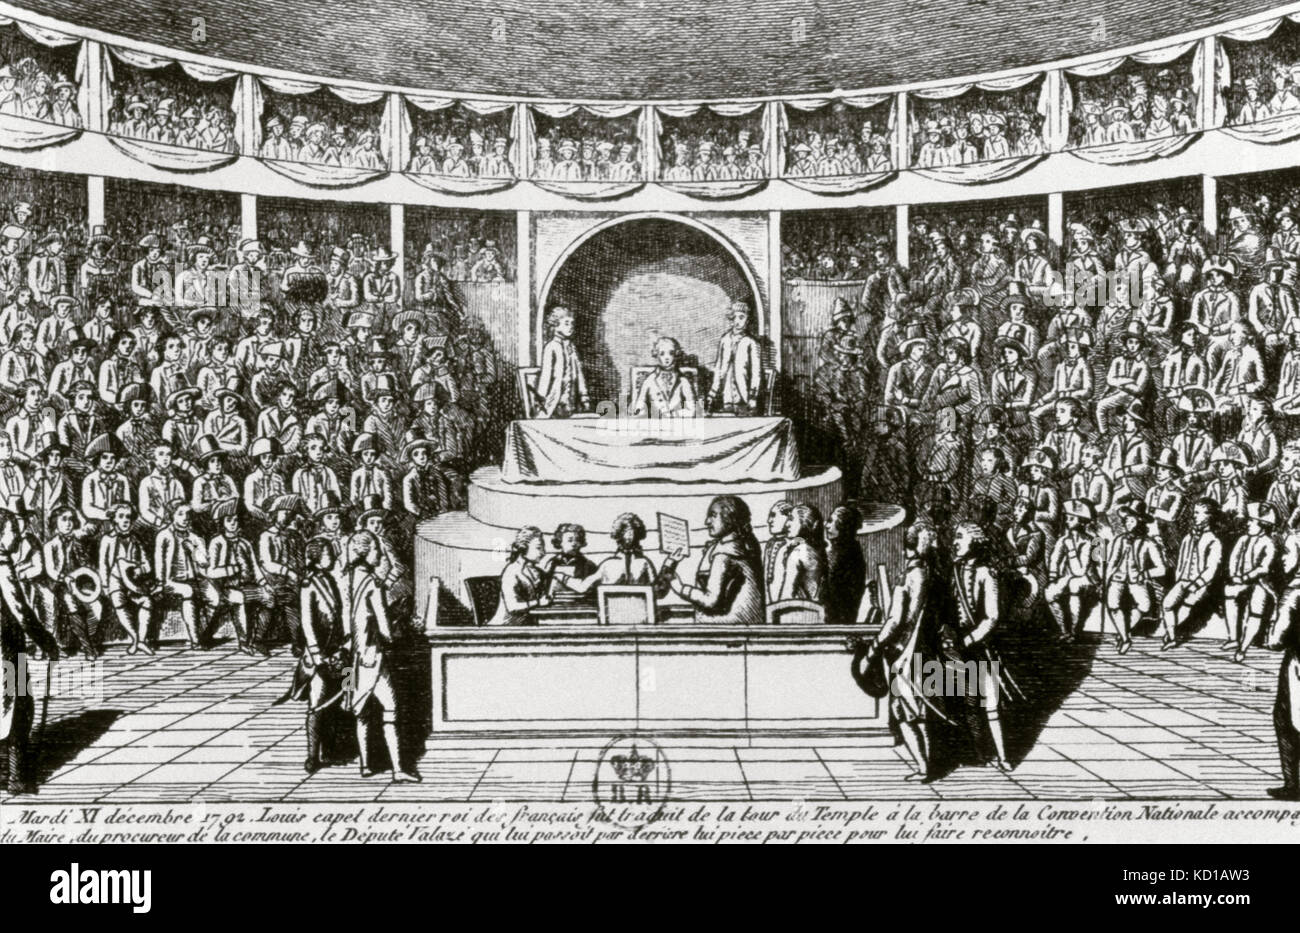 La Révolution française (1789-1799). Convention nationale. Interrogatoire du roi Louis XVI devant la Convention nationale, 11 décembre 1792. Gravure d'un journal de l'époque Banque D'Images